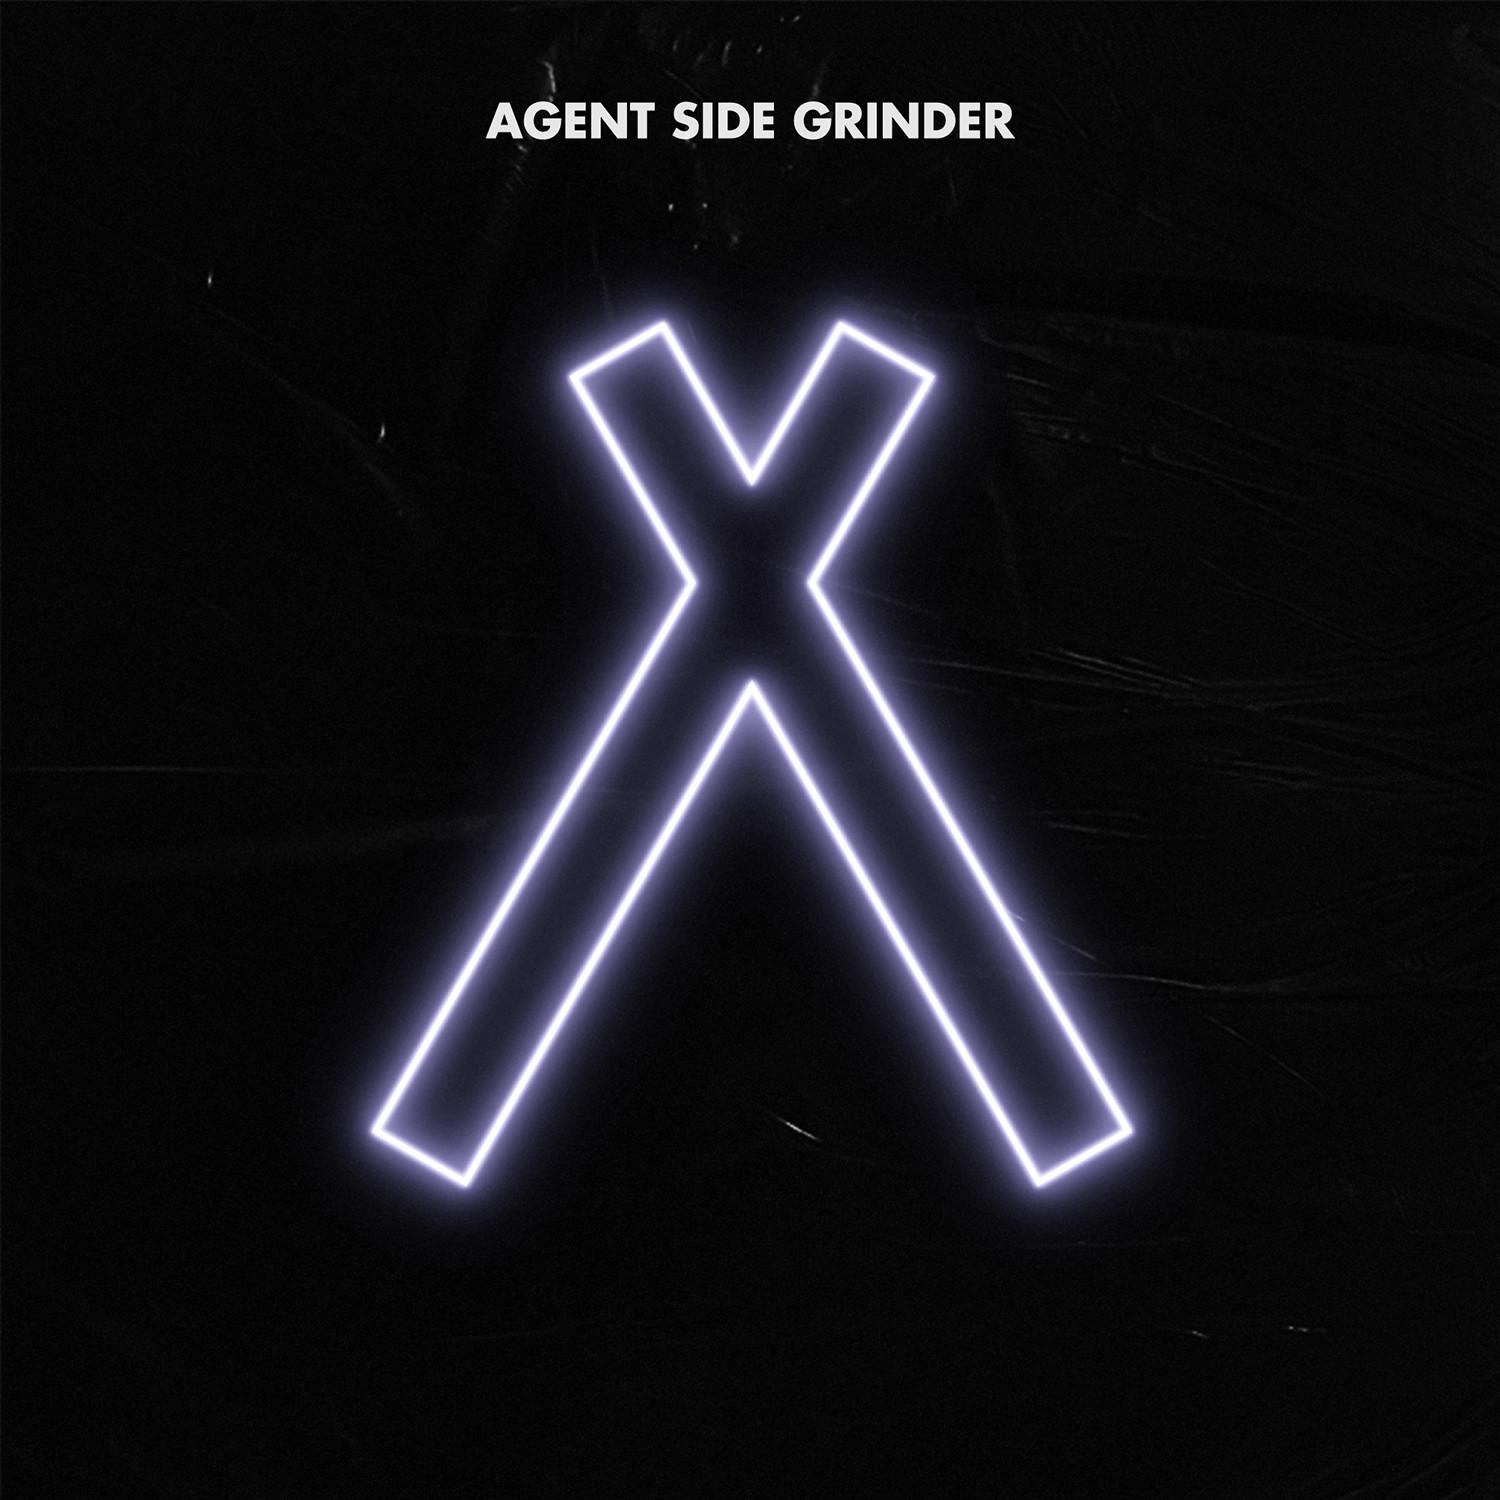 Agent Side Grinder - Wounded Star